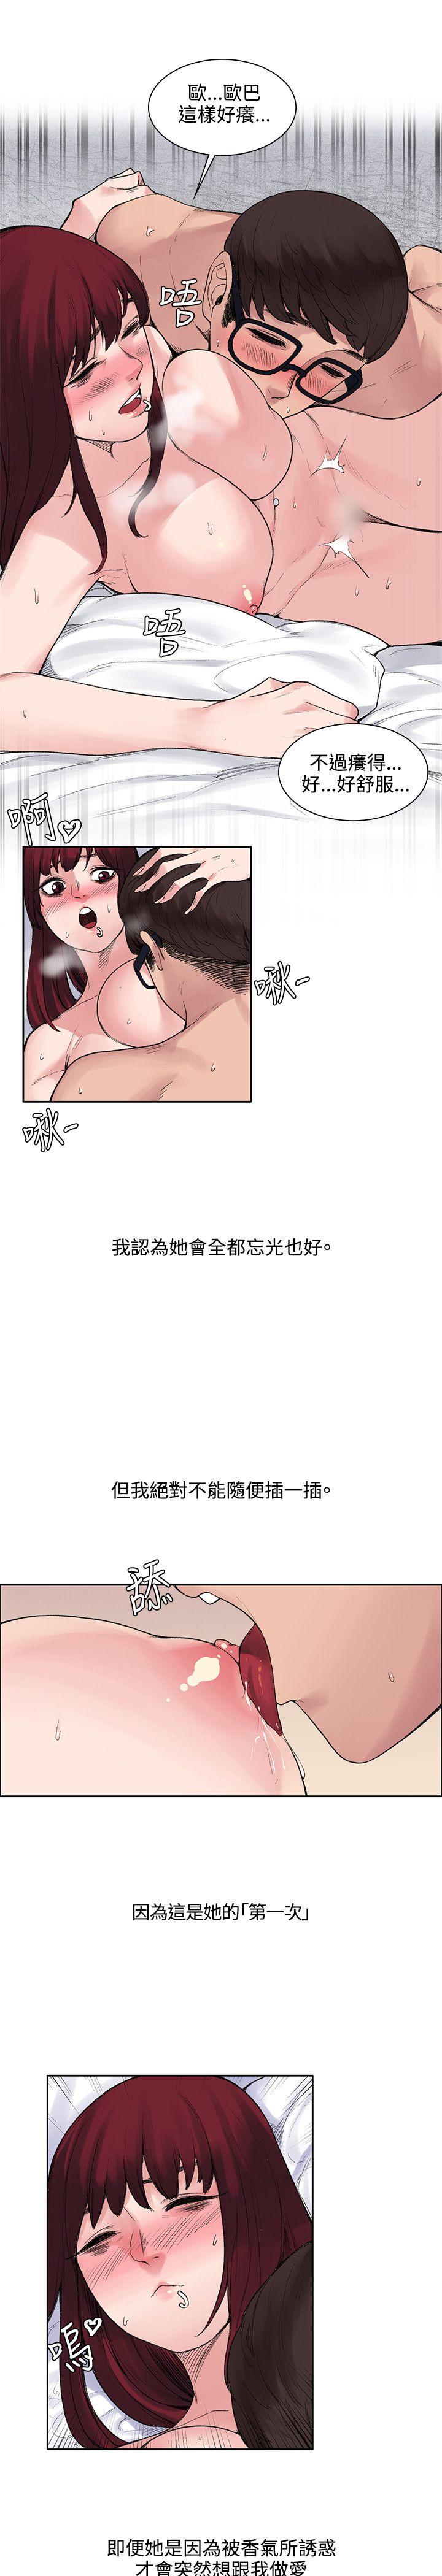 韩国污漫画 那裡的香氣 第10话 11